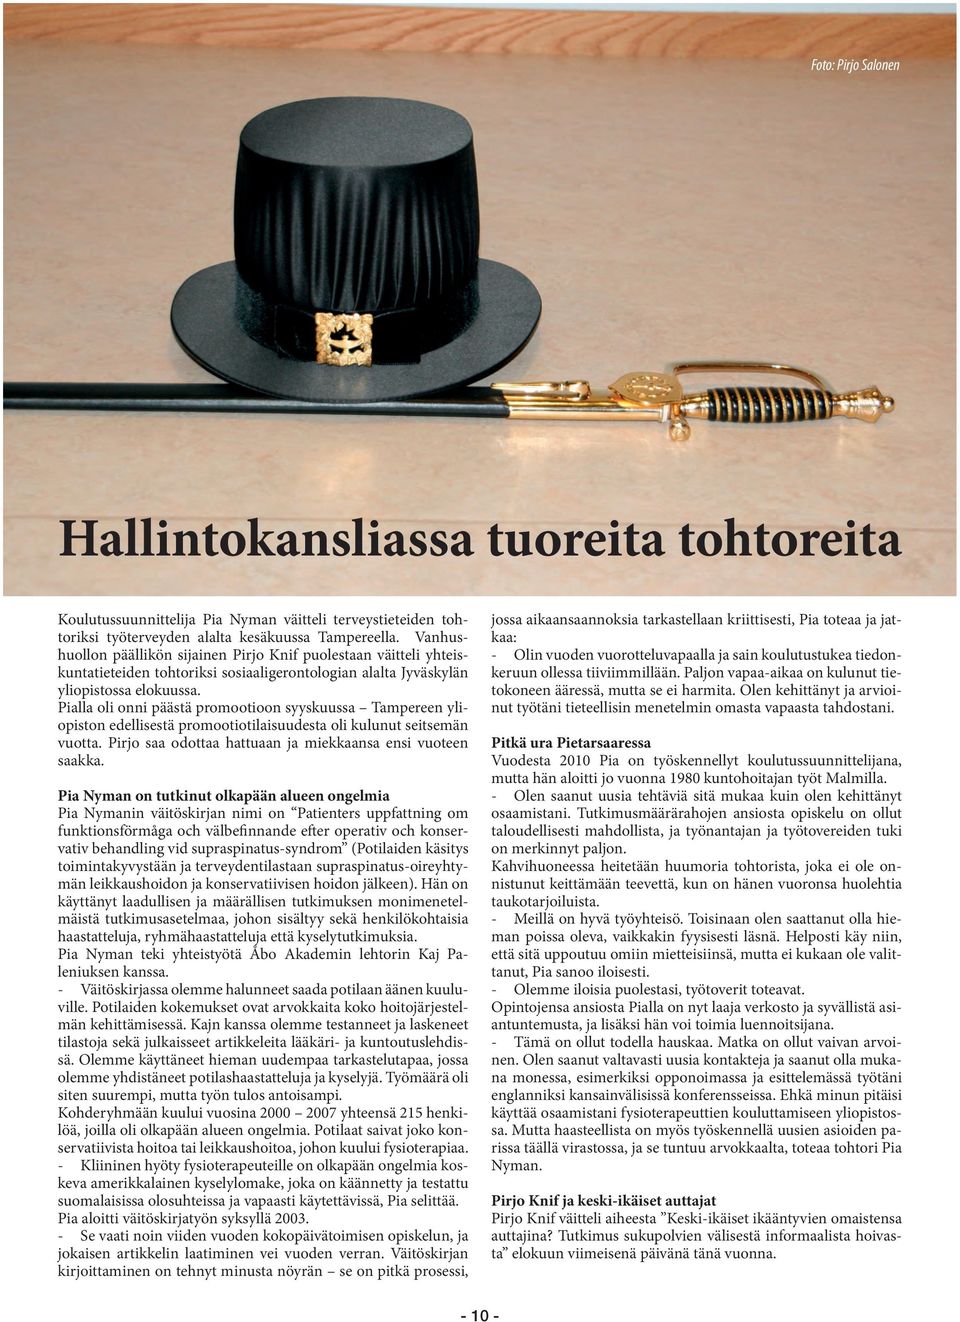 Pialla oli onni päästä promootioon syyskuussa Tampereen yliopiston edellisestä promootiotilaisuudesta oli kulunut seitsemän vuotta. Pirjo saa odottaa hattuaan ja miekkaansa ensi vuoteen saakka.